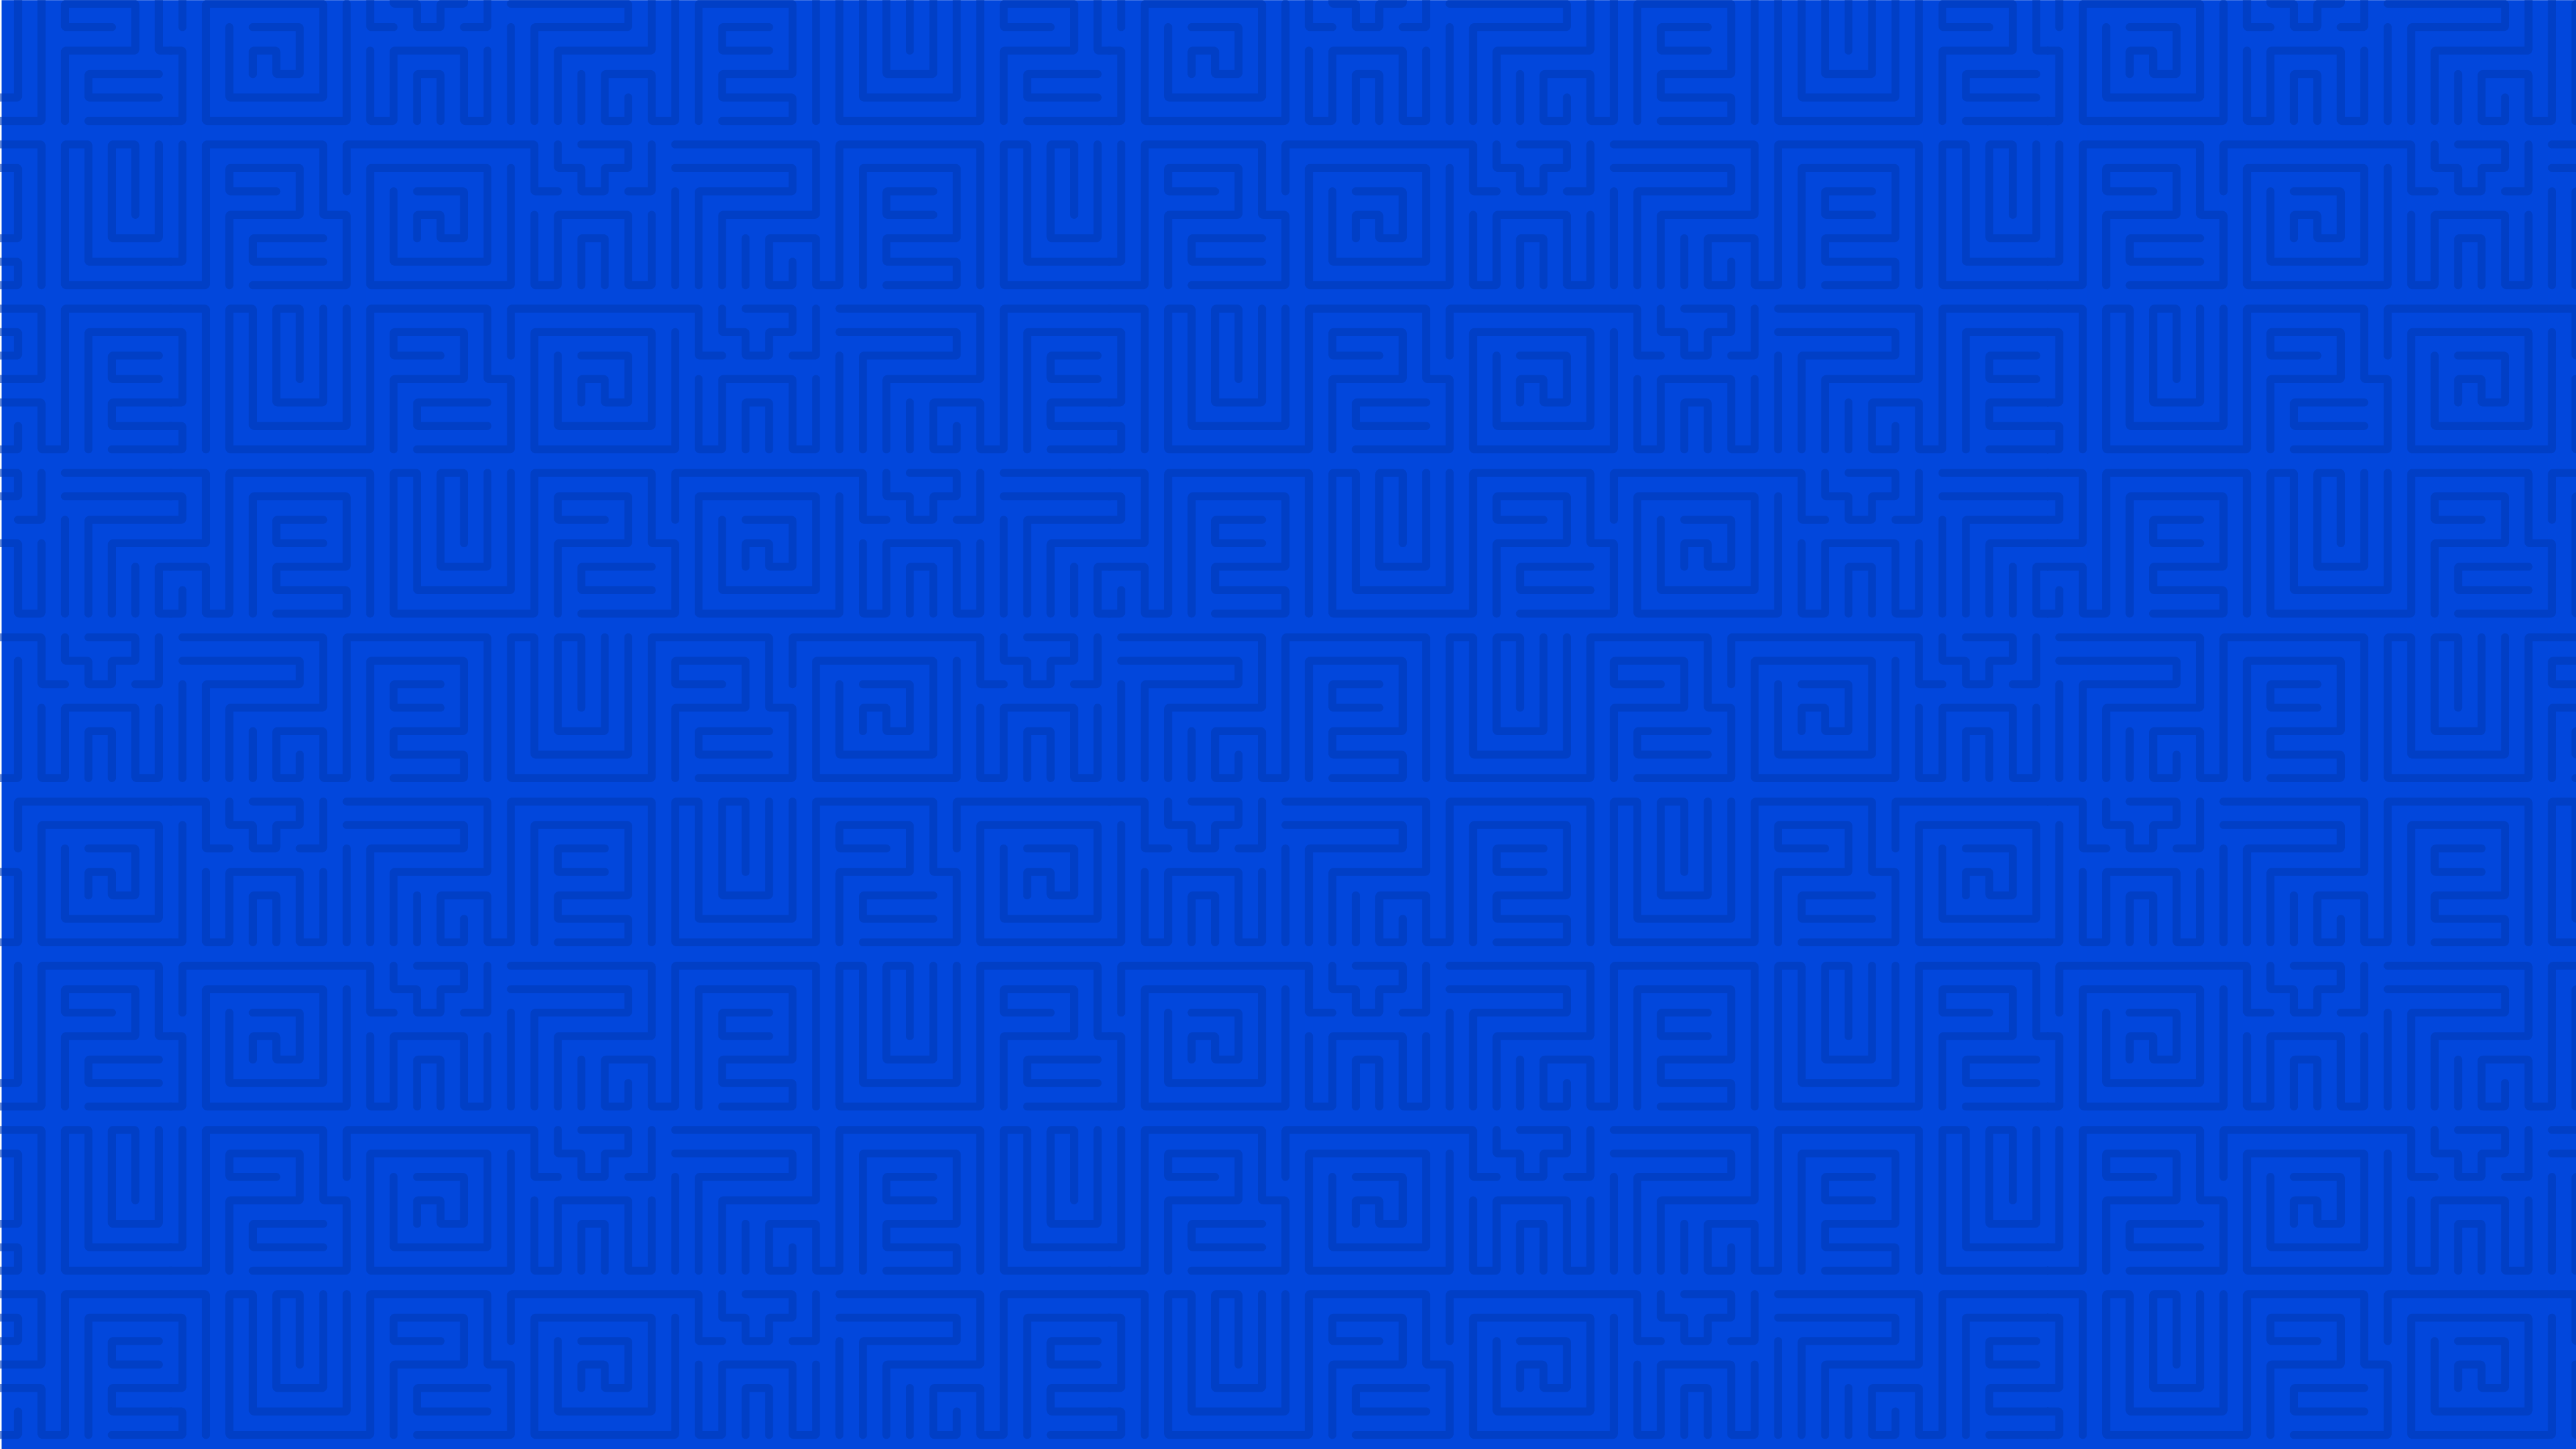 Maze pattern